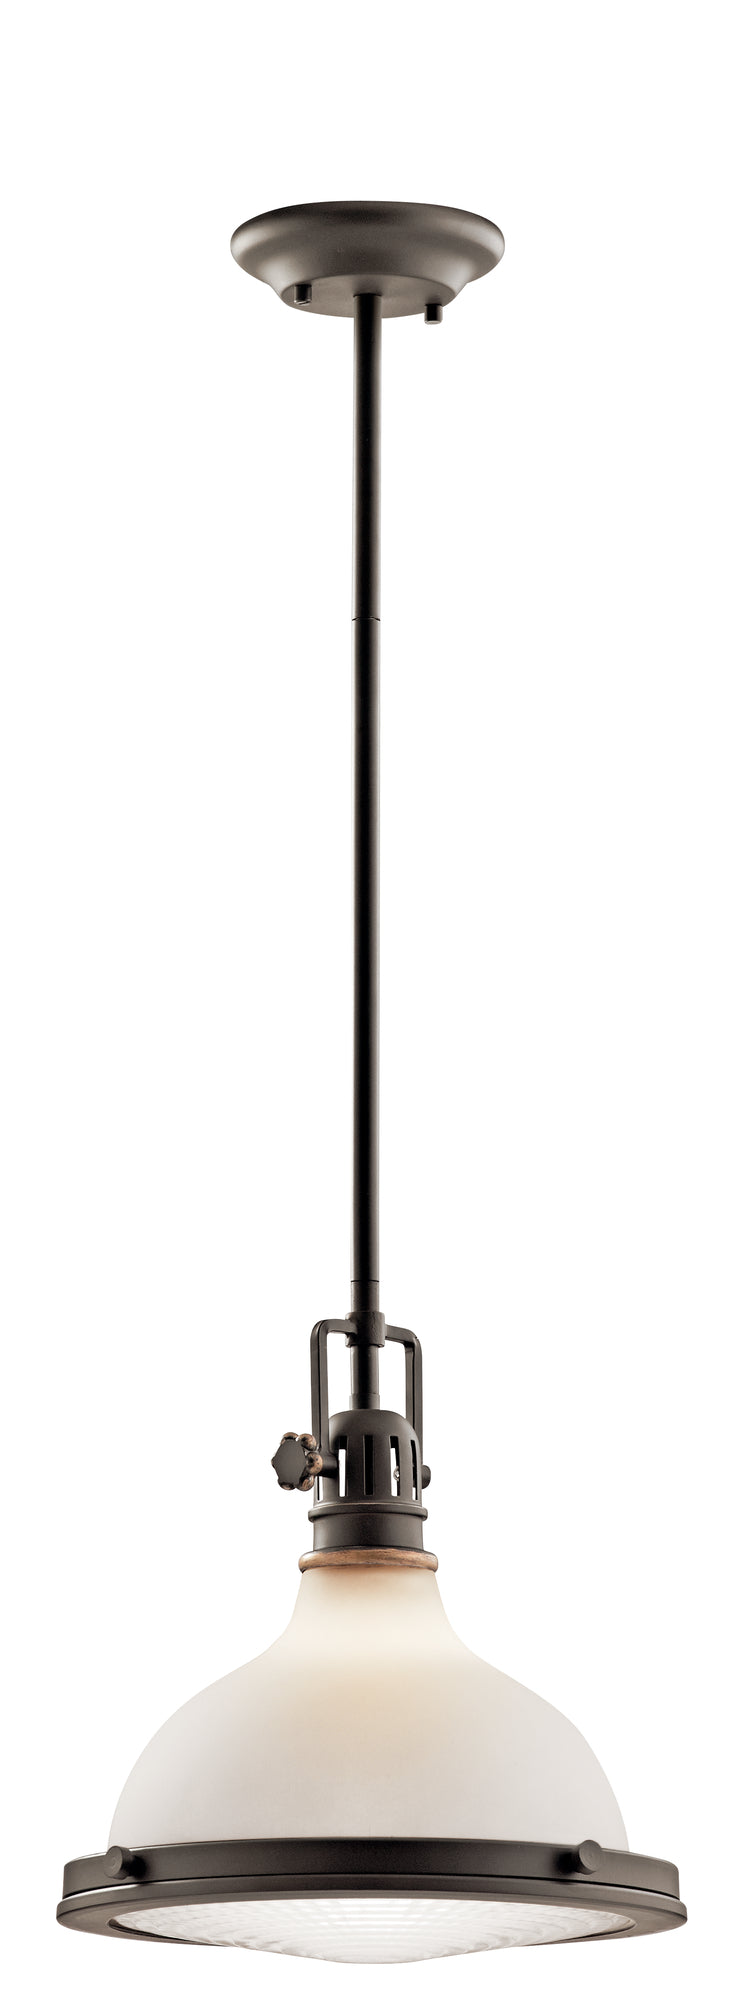 HATTERAS BAY Suspension simple Bronze - 43765OZ | KICHLER